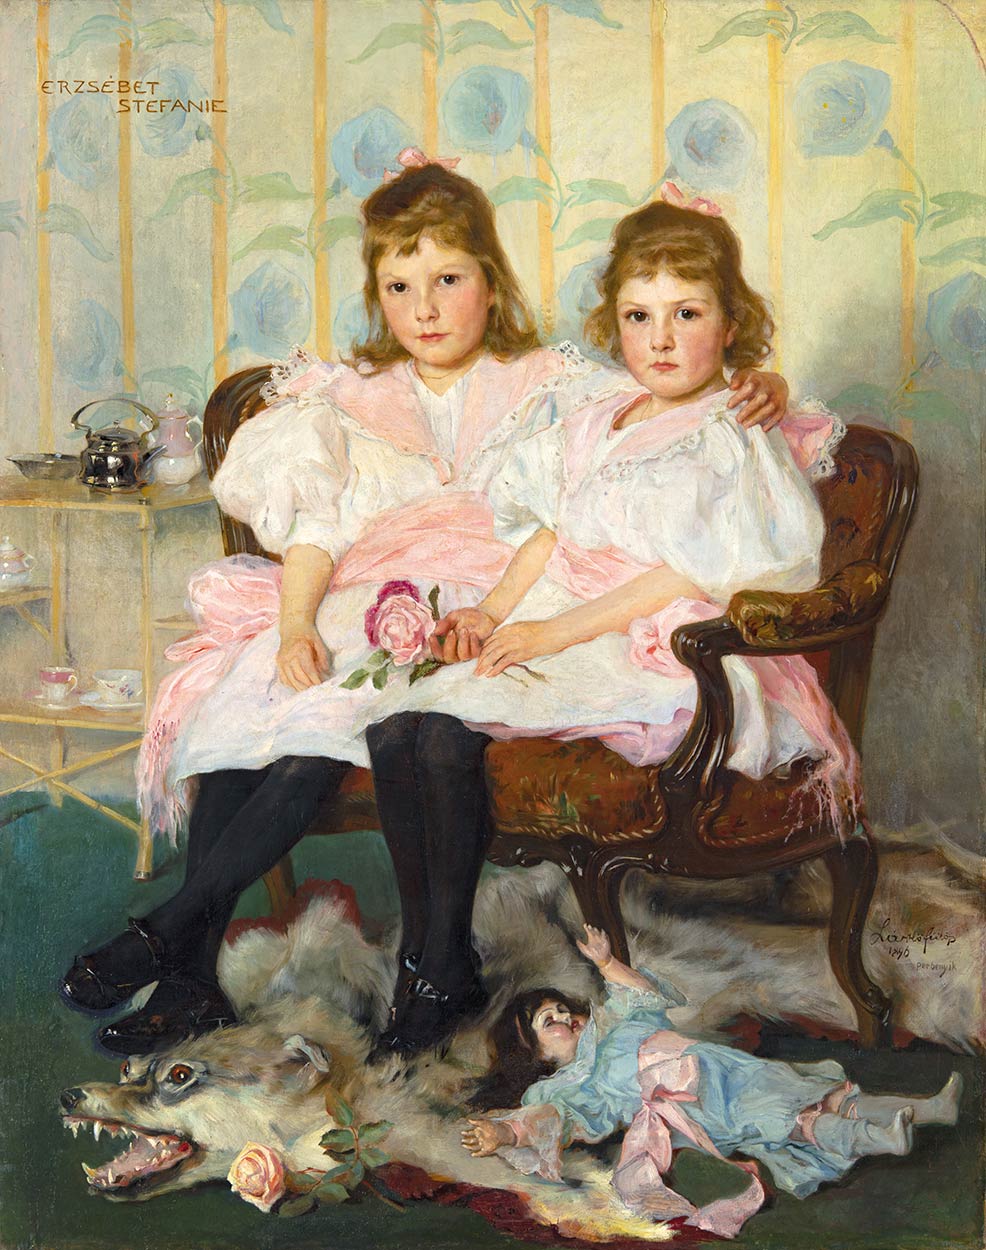 László Fülöp (1869-1937) Dual portrait of Erzsébet and Elisabeth, 1896